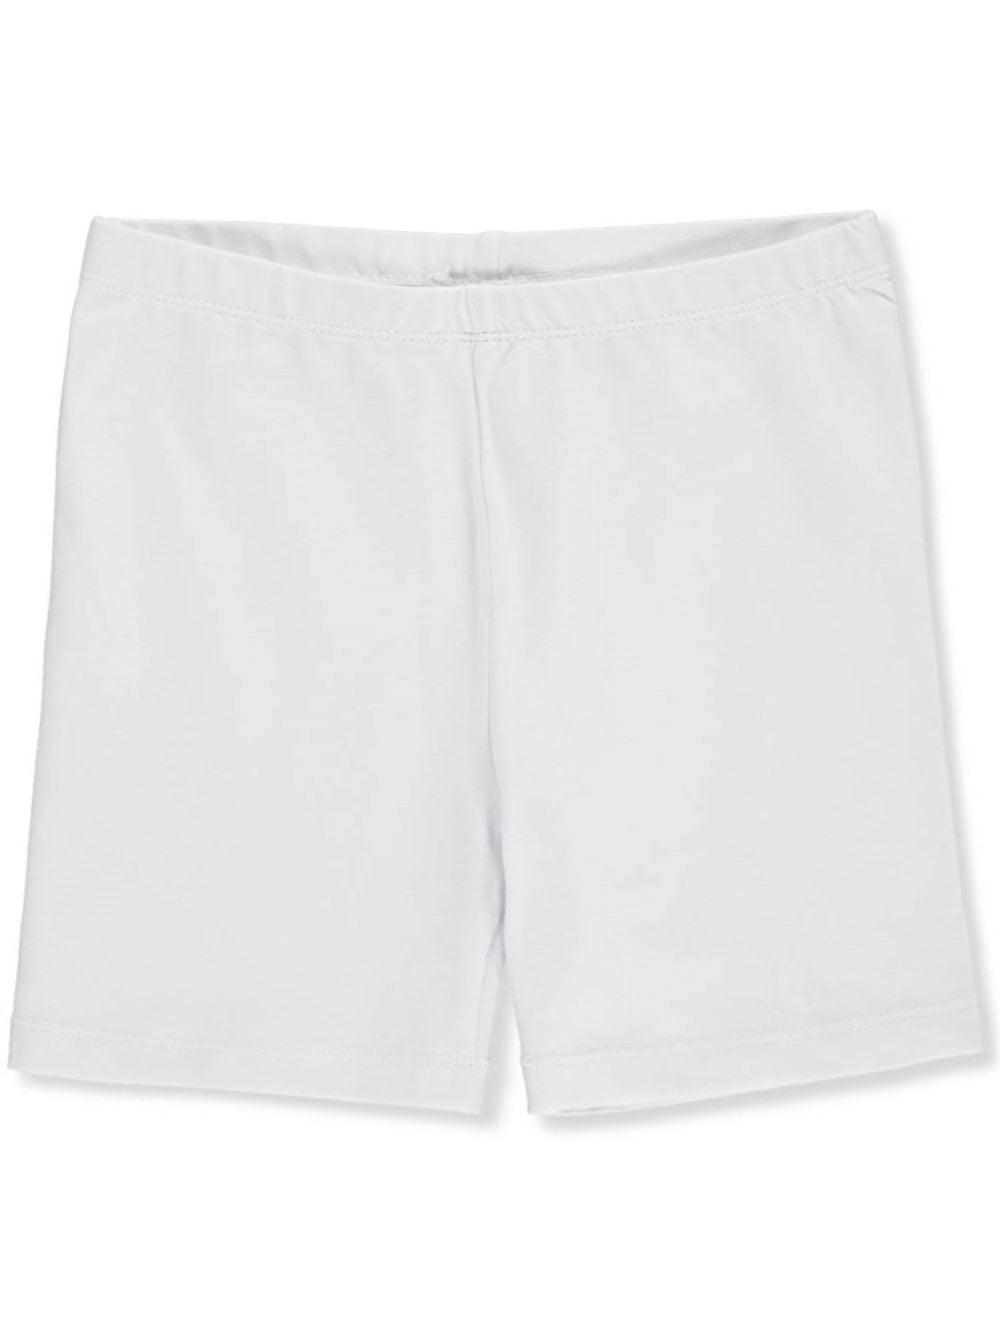 Bike Shorts | White - Walmart.com